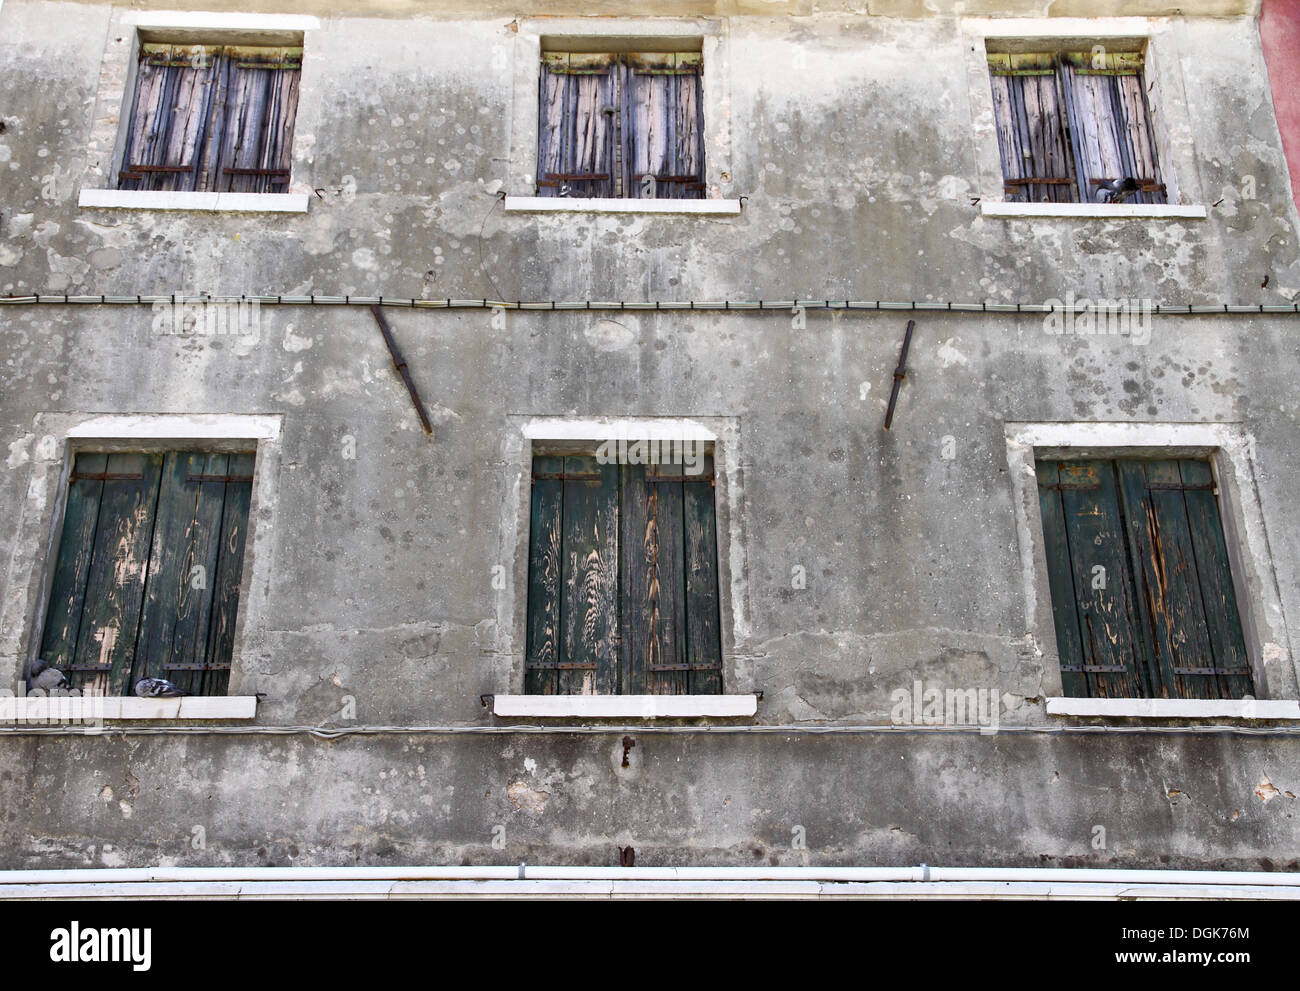 Maison grise dont les fenêtres sont fermées comme arrière-plan, horizontal Banque D'Images